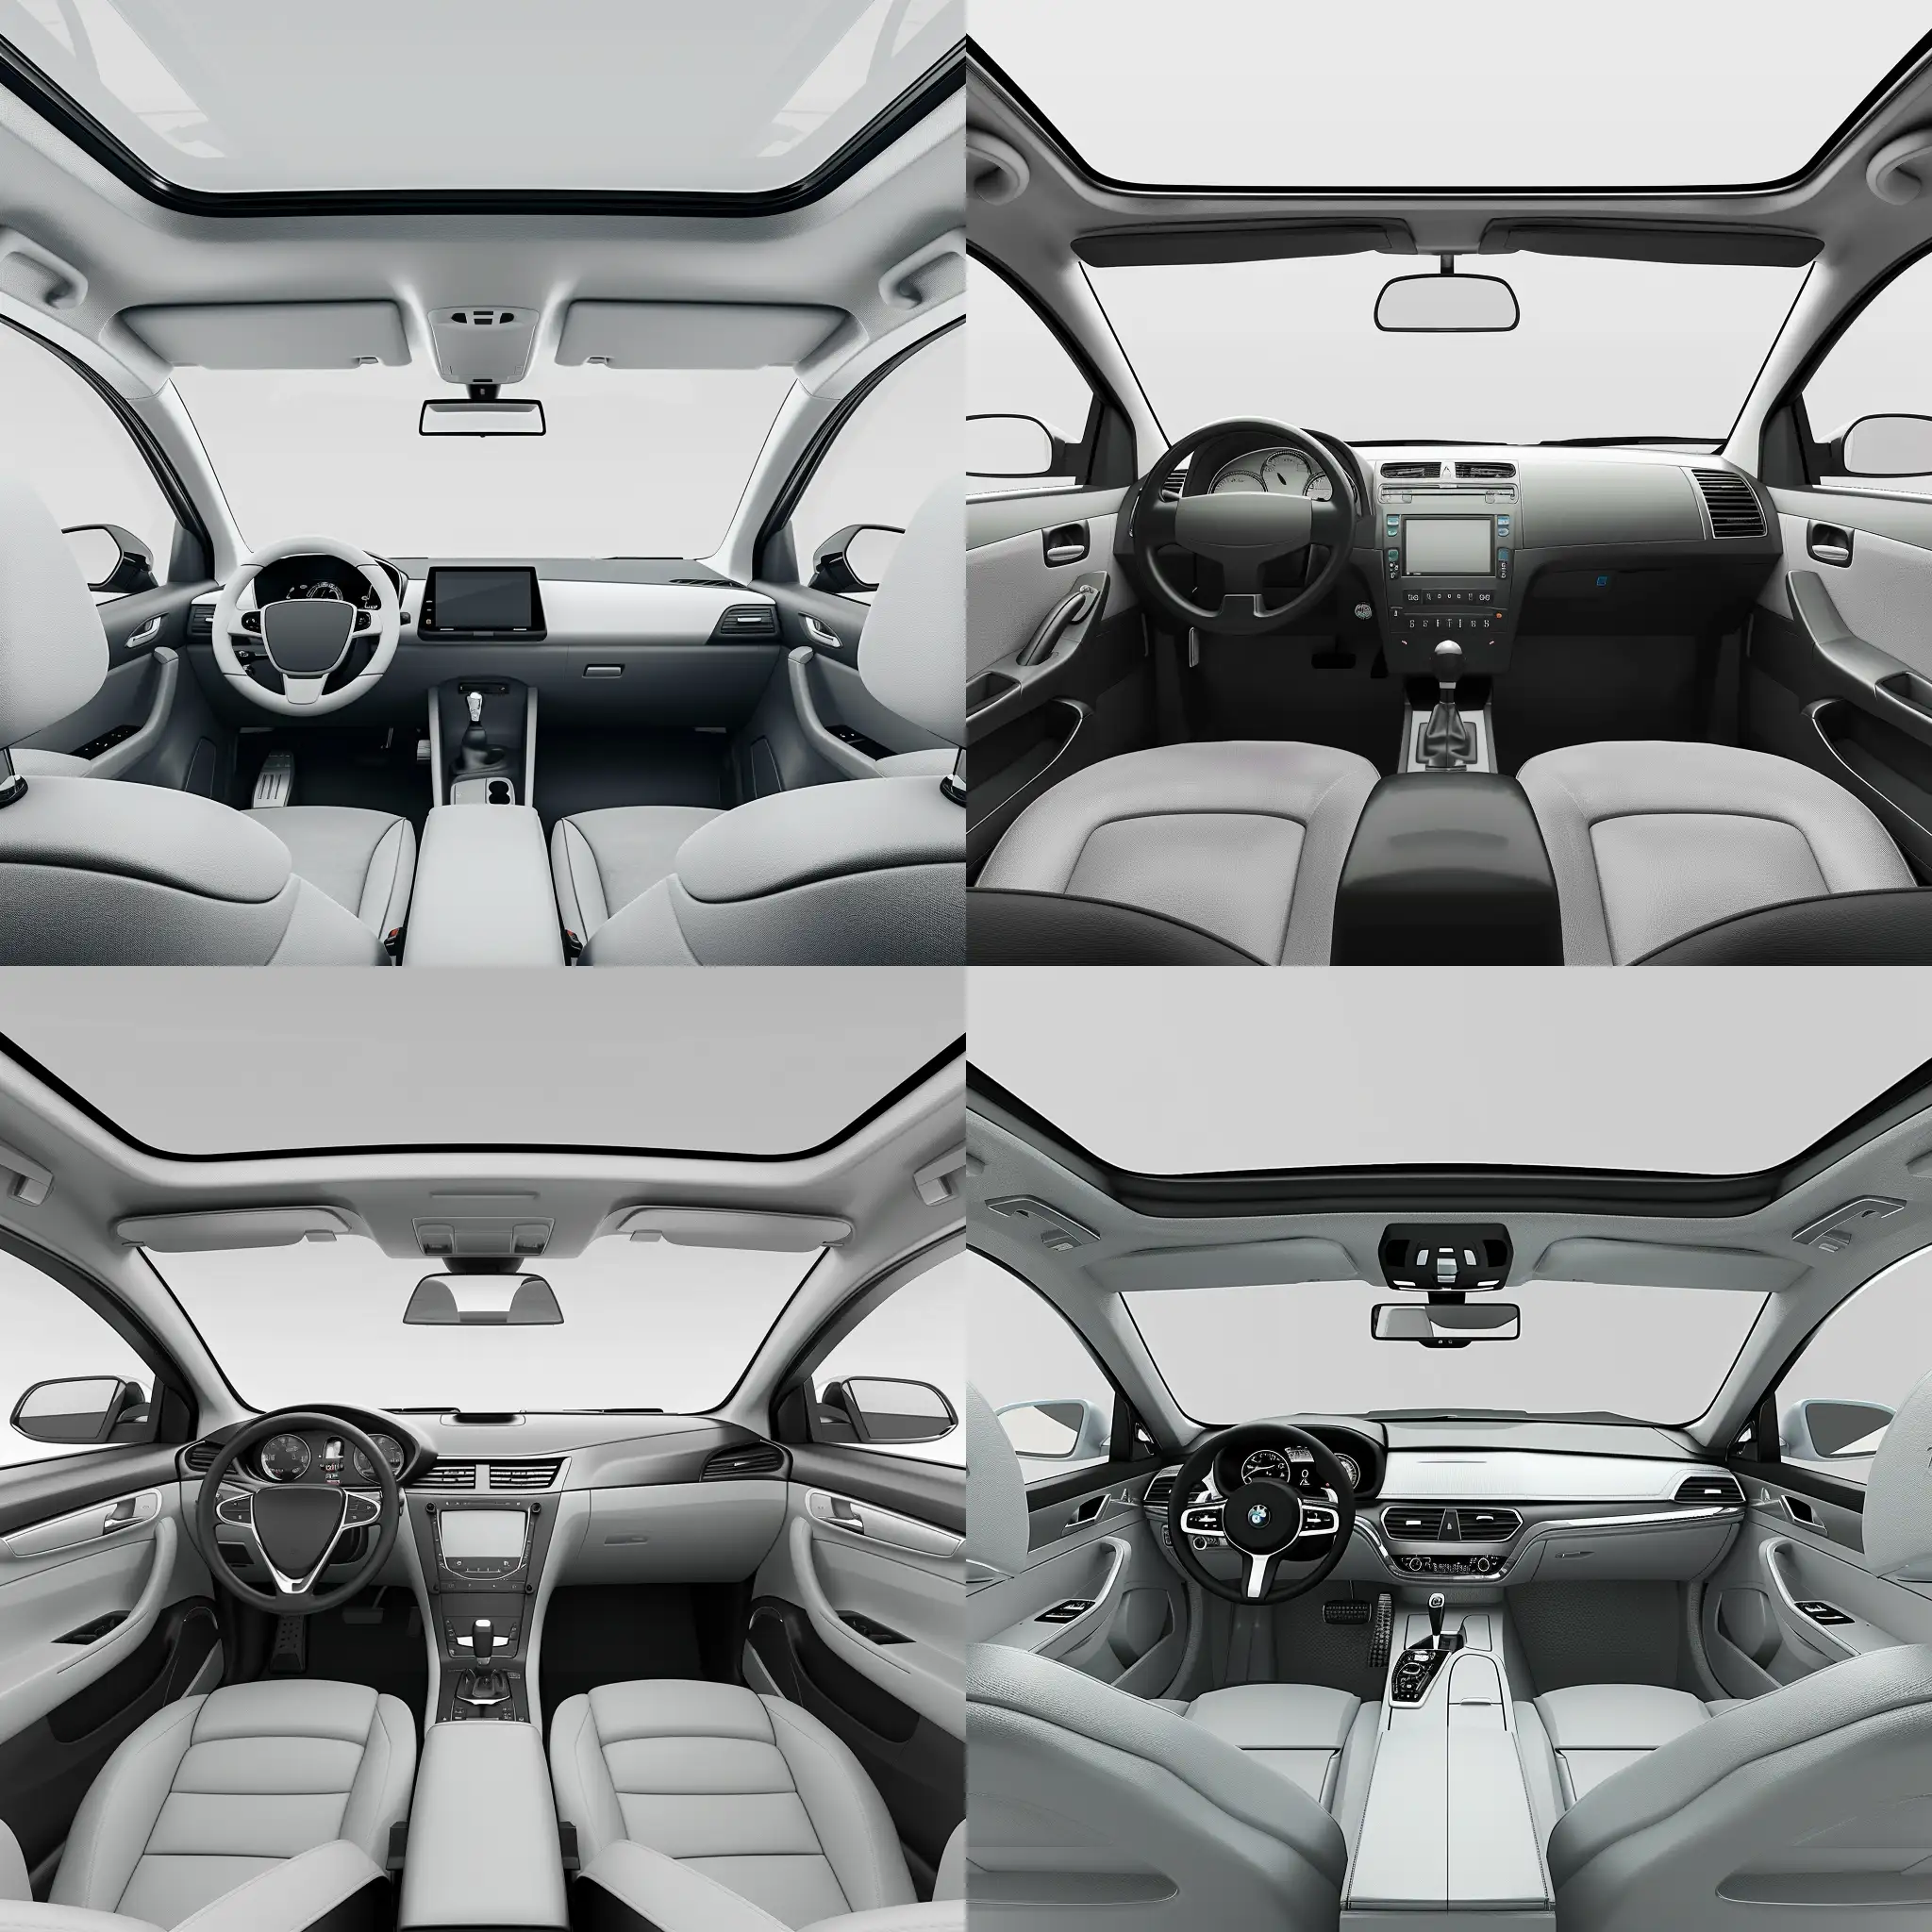 genereaza-mi imagine realista in care sa fie aparte fiecare din accesoriile de interior a masinii, pscaune, macarale geam, volat, bordul masinii pe fundal alb-gri